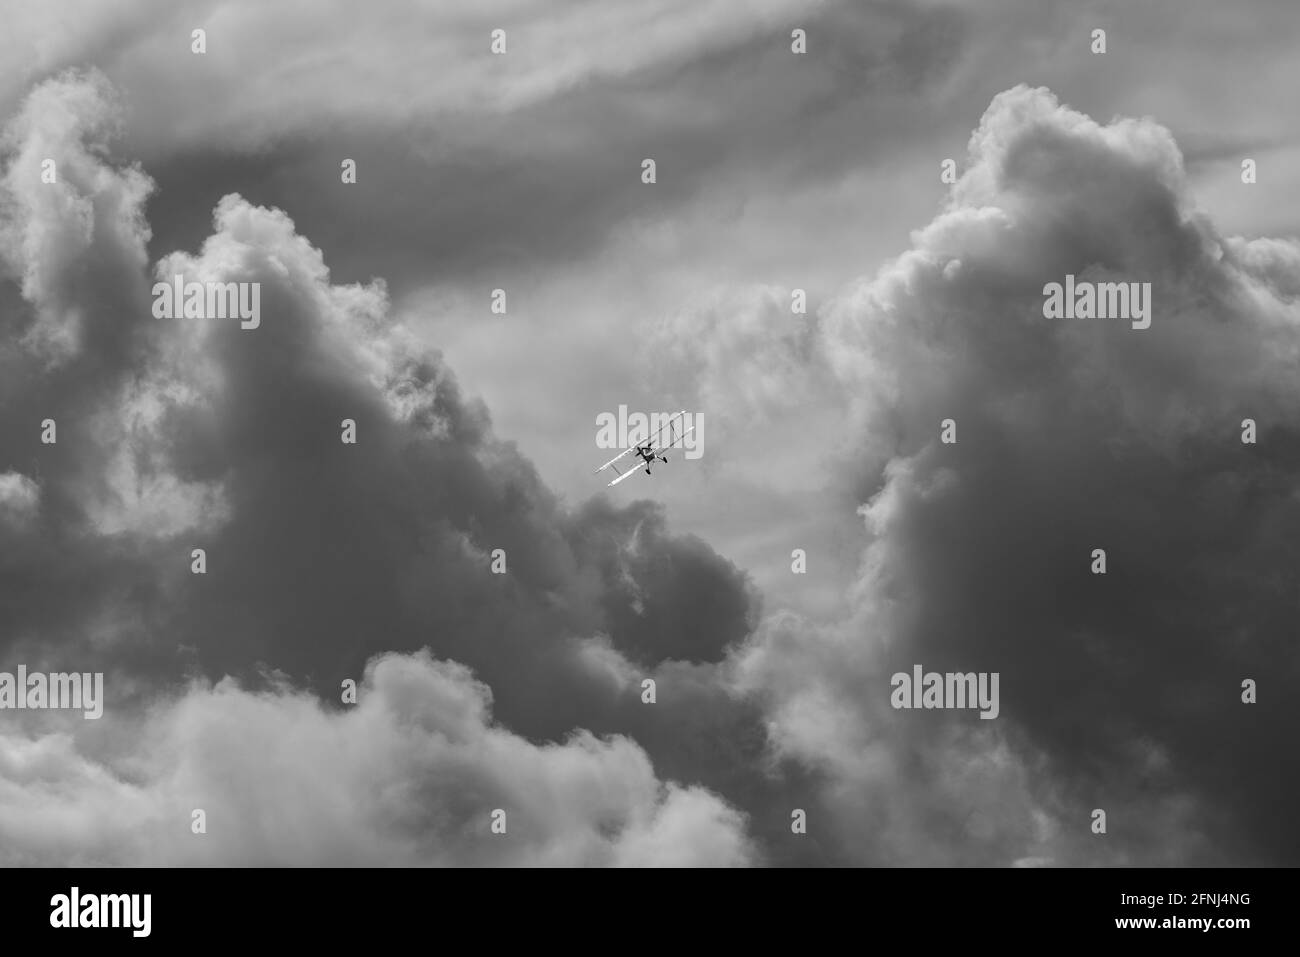 Incredibile immagine mono come un piccolo biplano sale verso torreggiante nuvole con luce solare che si stendono dalle ali inclinate Foto Stock